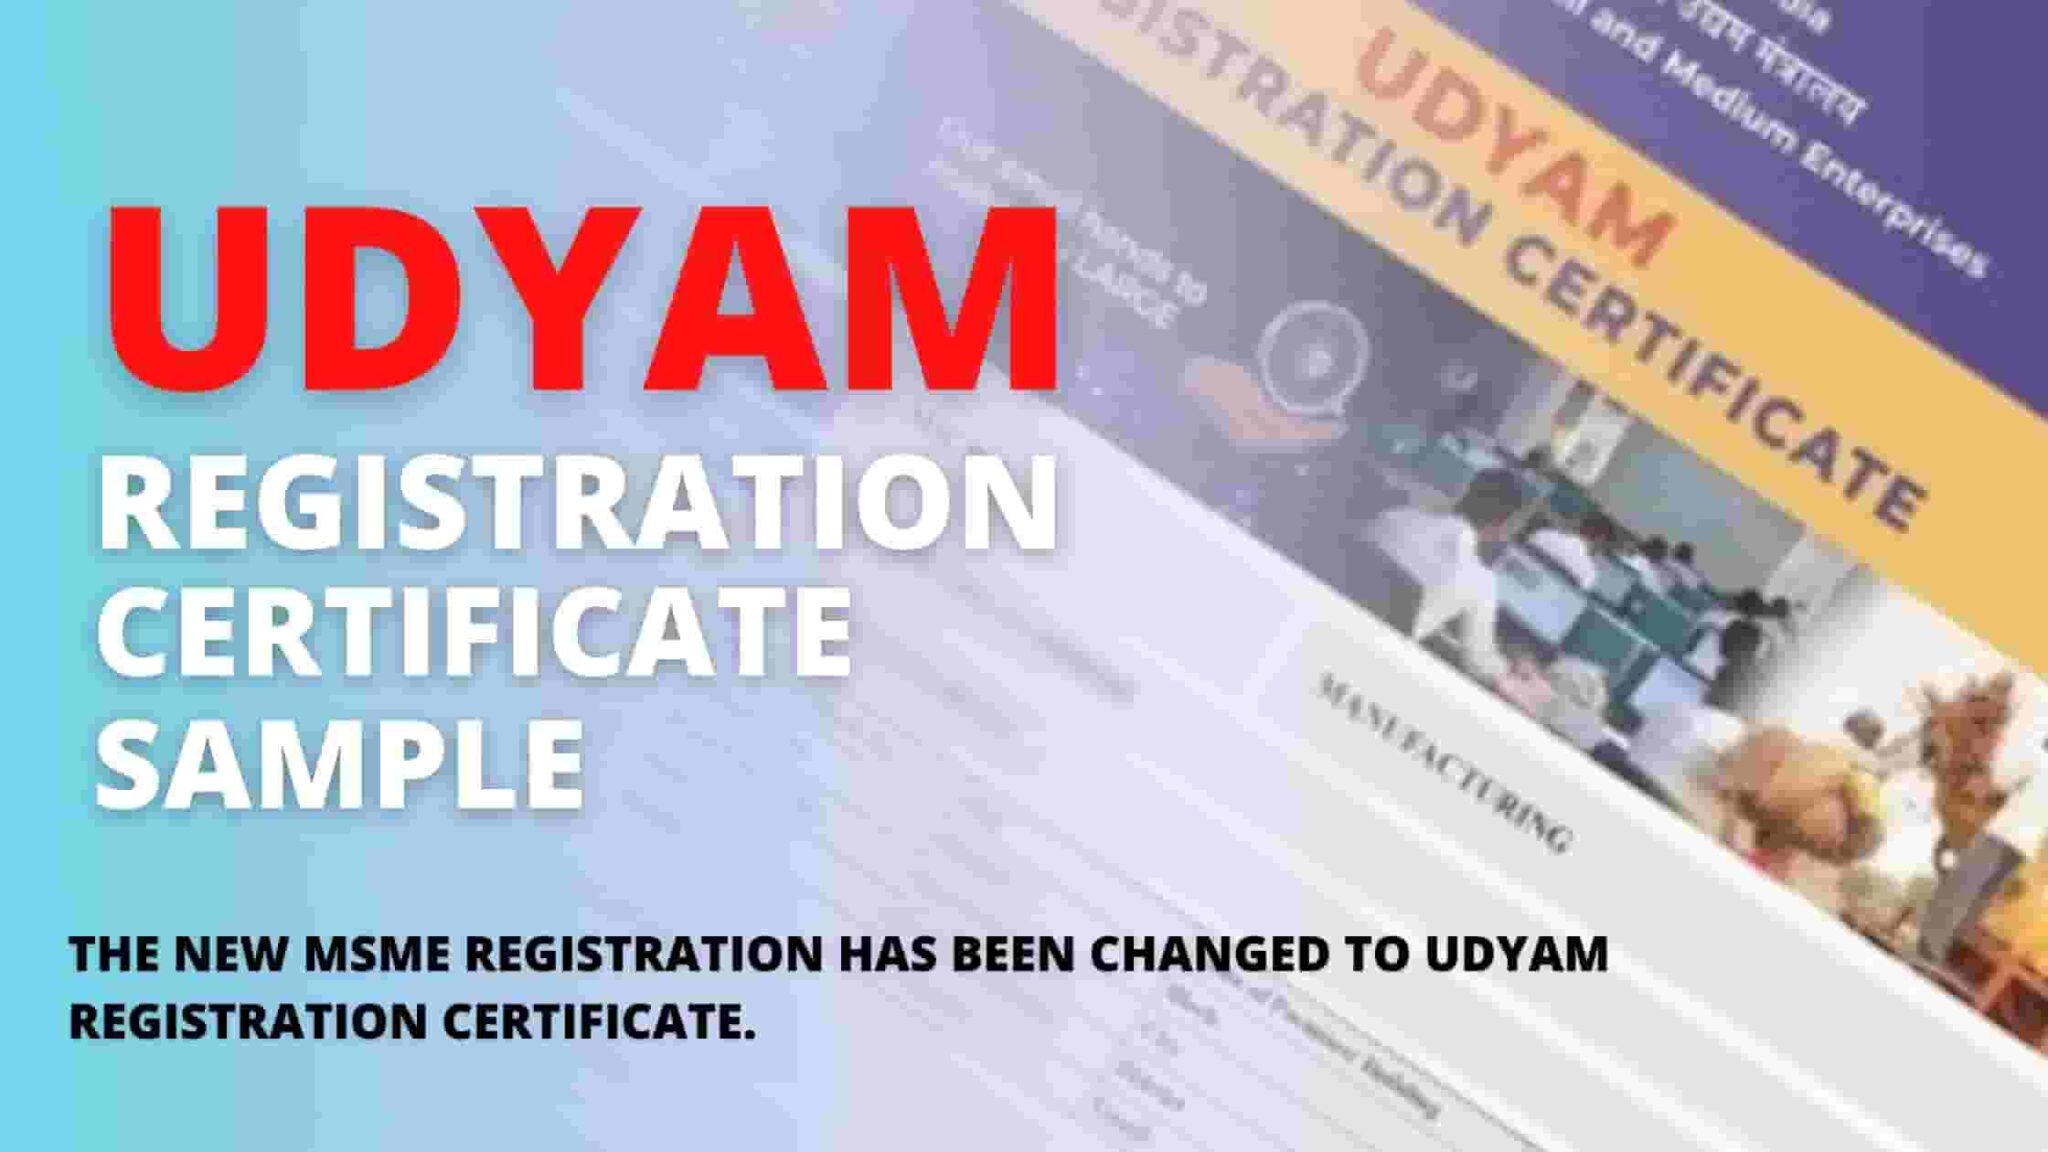 Udyam Registration Certificate Sample - MSME UDYAM REGISTRATION FORM